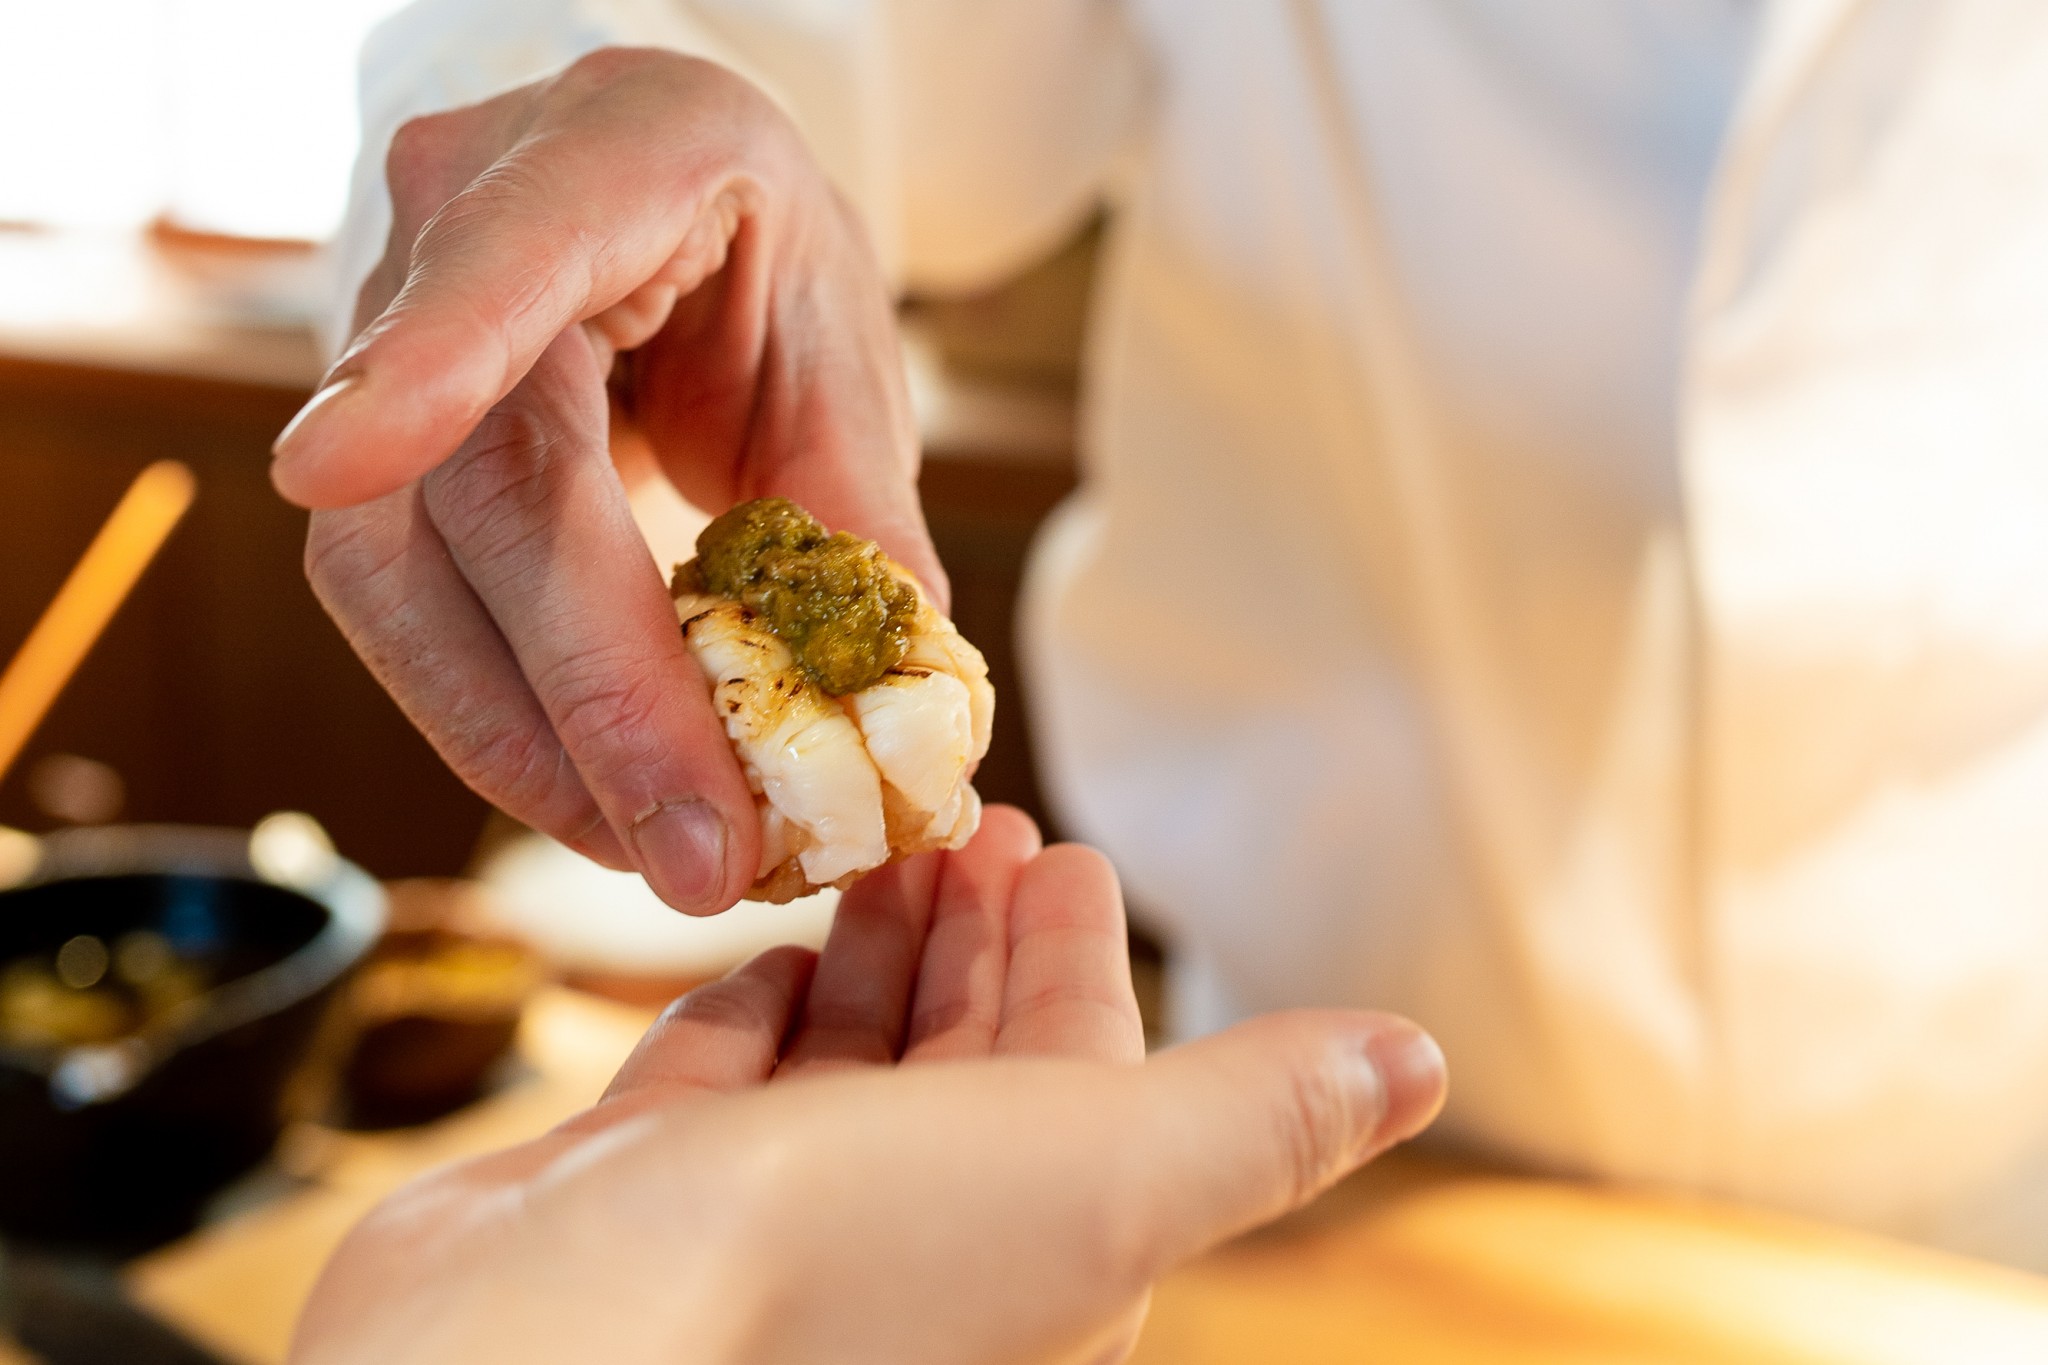 長崎・五島産の伊勢海老はサッと炙り、濃厚な海老の味噌をのせ手渡しで。はぜる身の食感と甘味に、赤酢のシャリがよく合う。